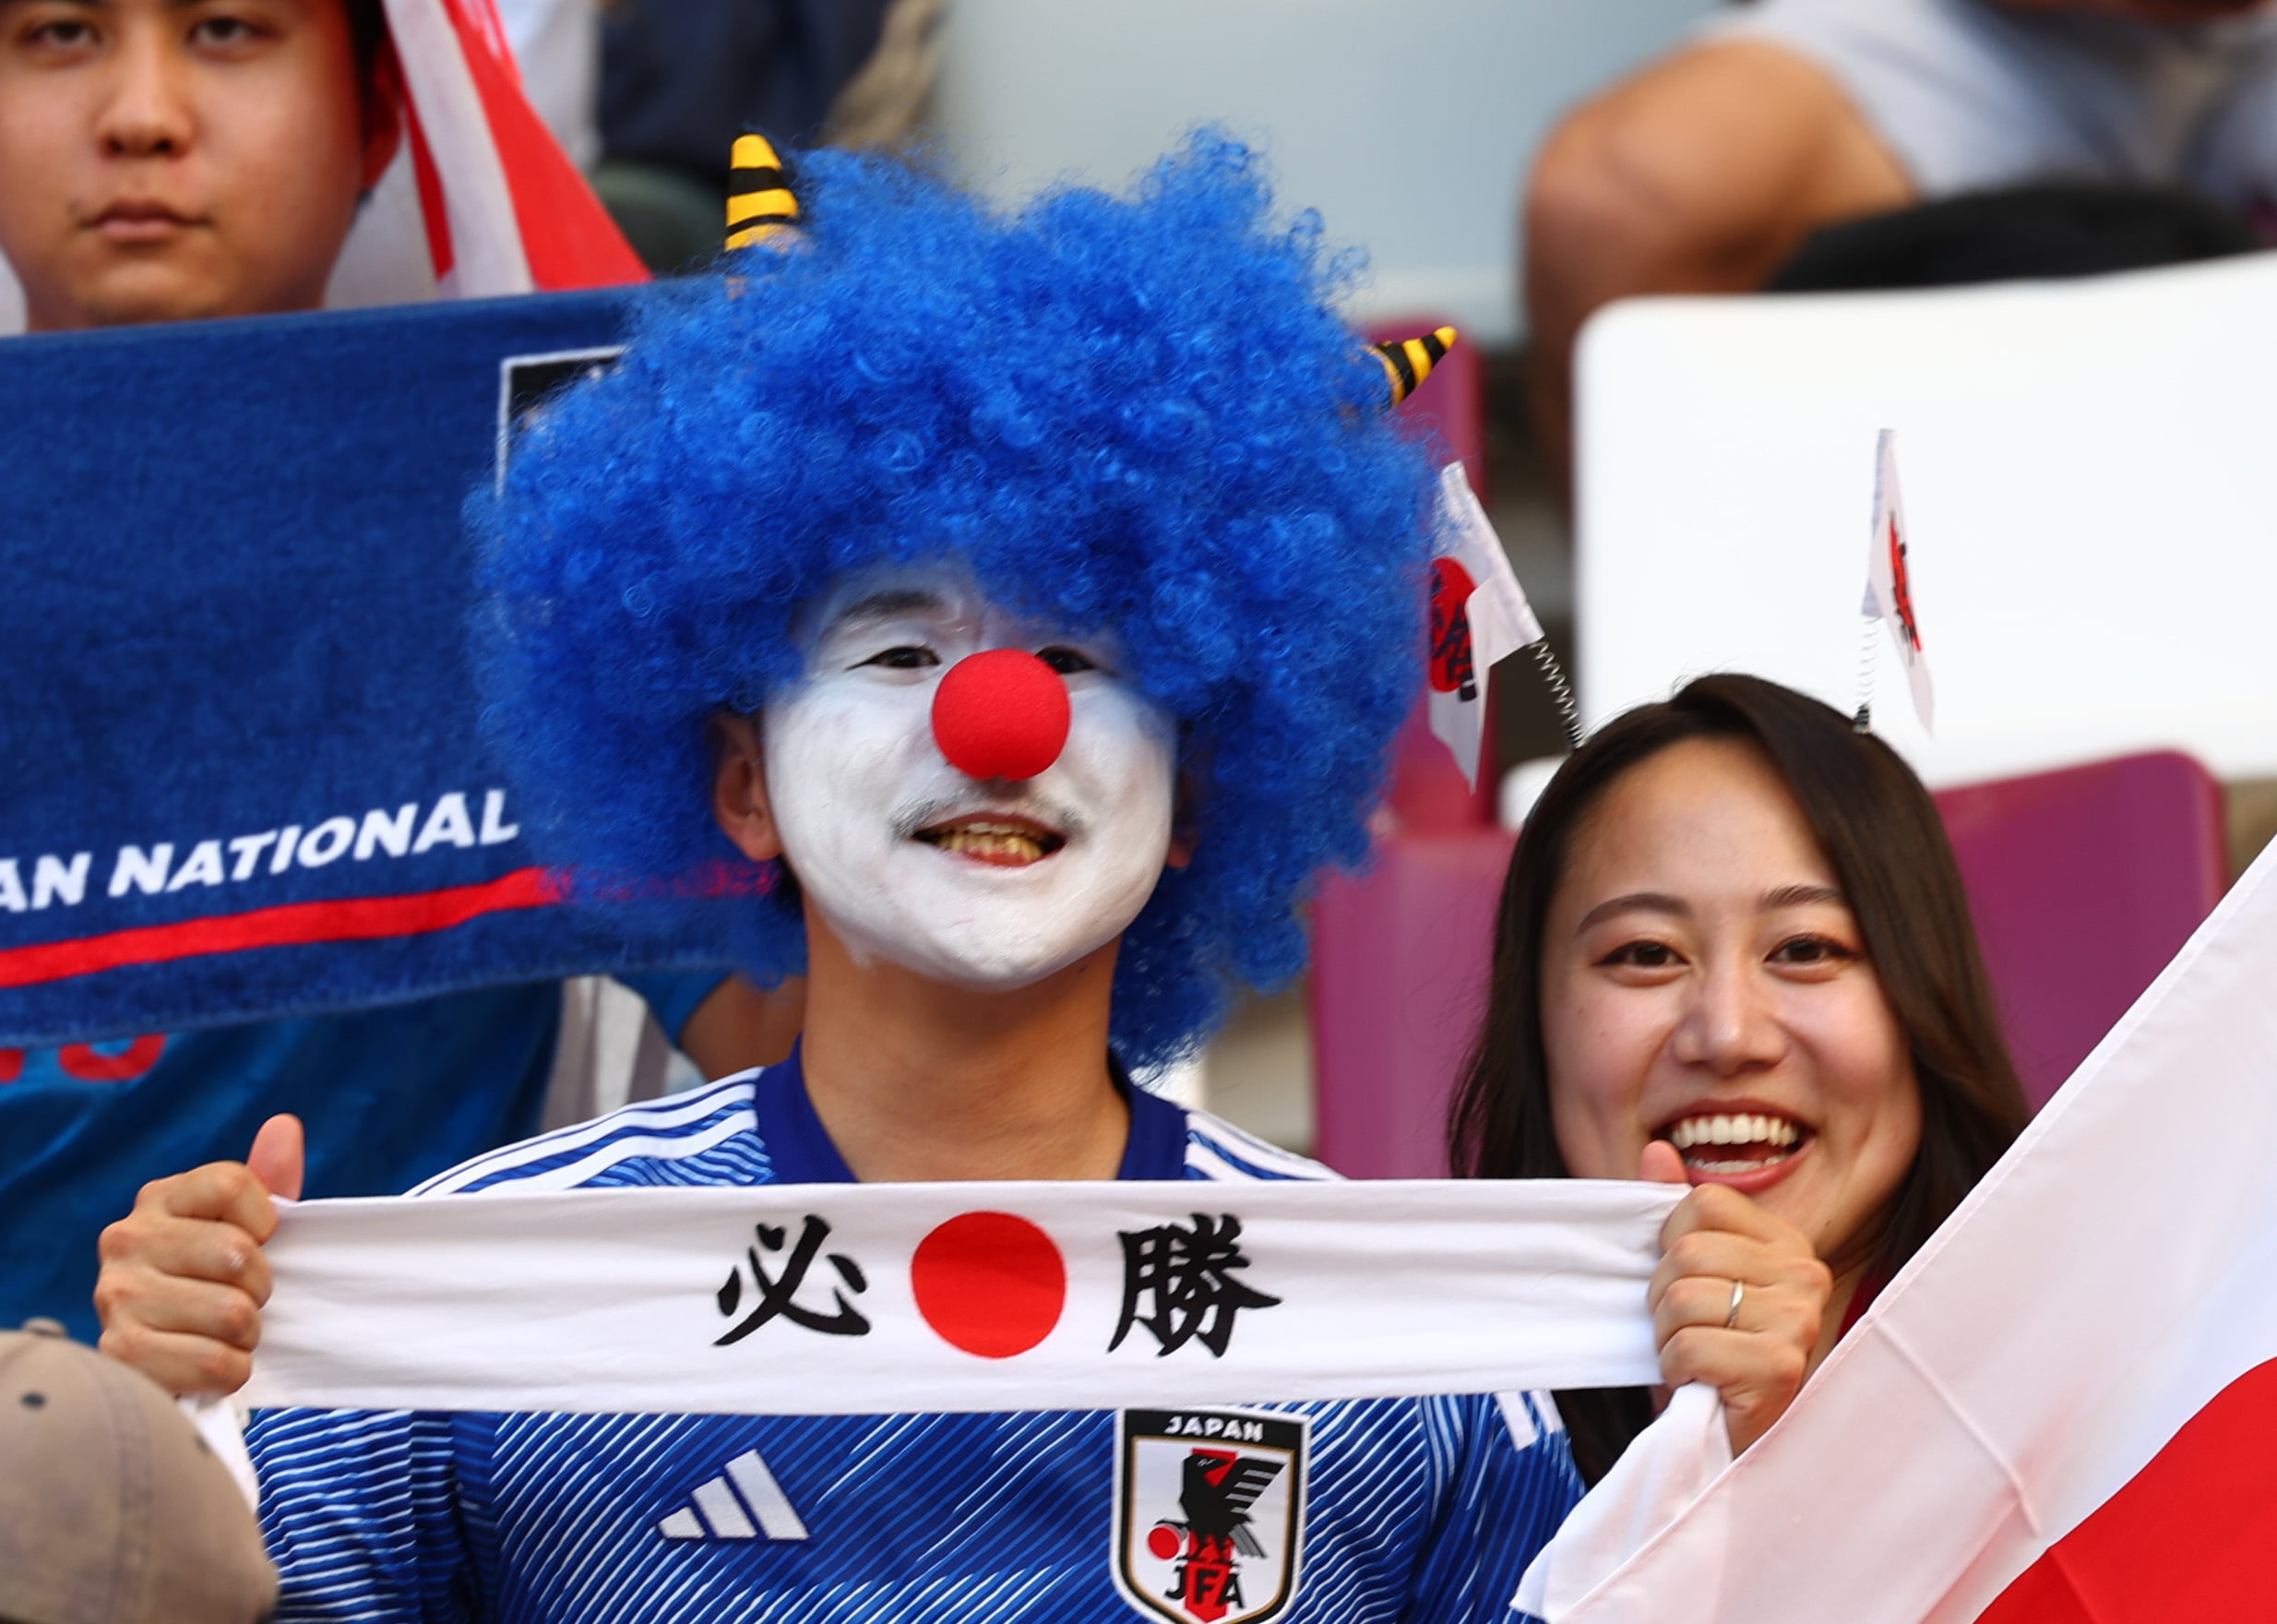 مشجع ياباني في كأس العالم 2022 المقامة بقطر